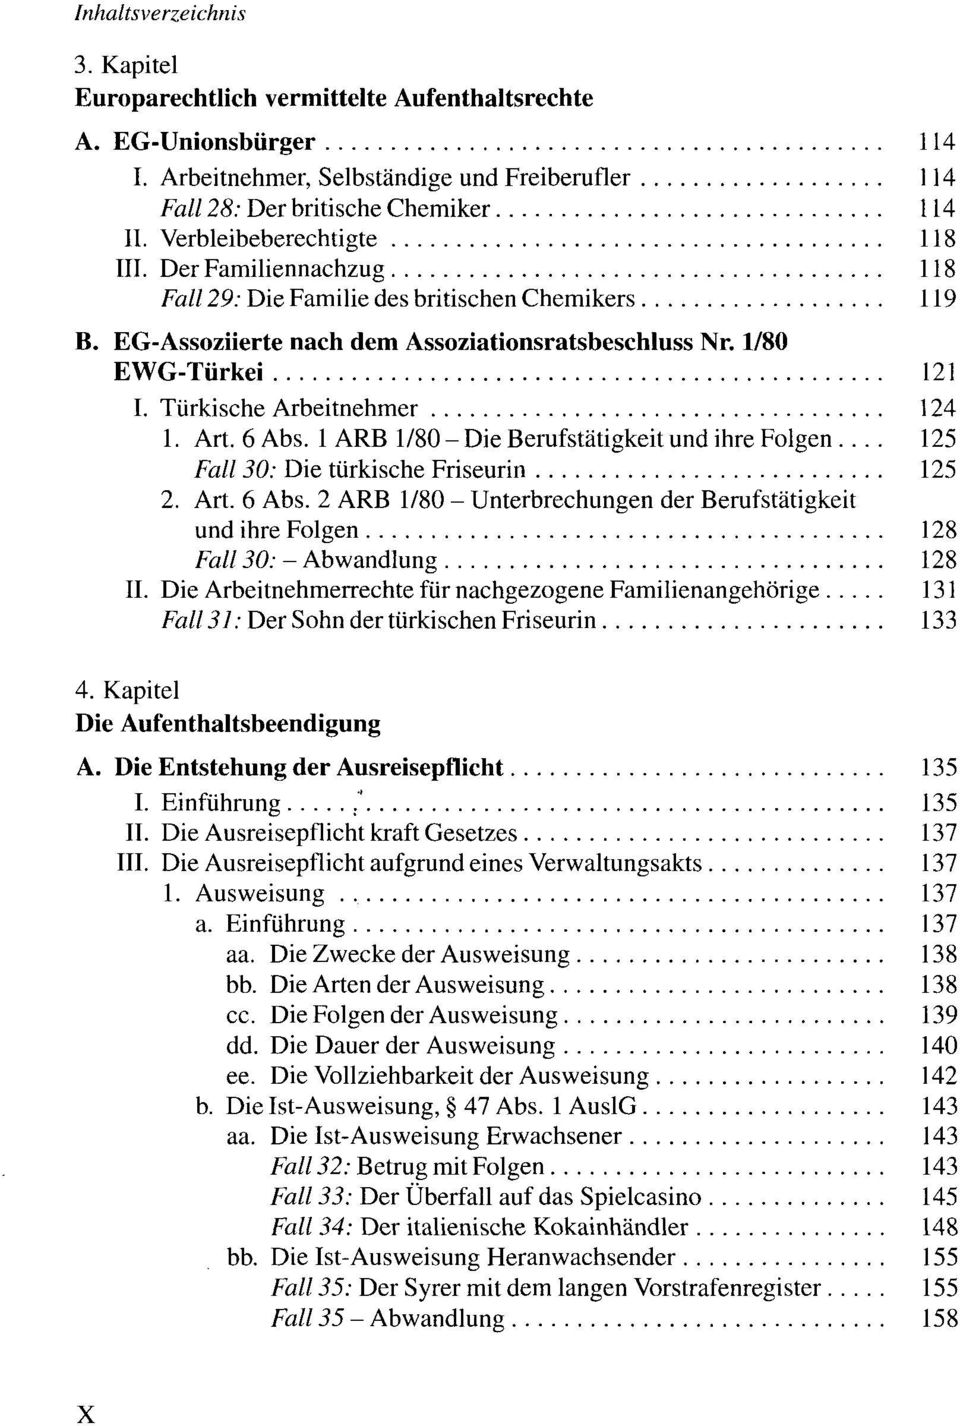 1 ARB 1/80 - Die Berufstätigkeit und ihre Folgen 125 Fall 30: Die türkische Friseurin 125 2. Art. 6 Abs.